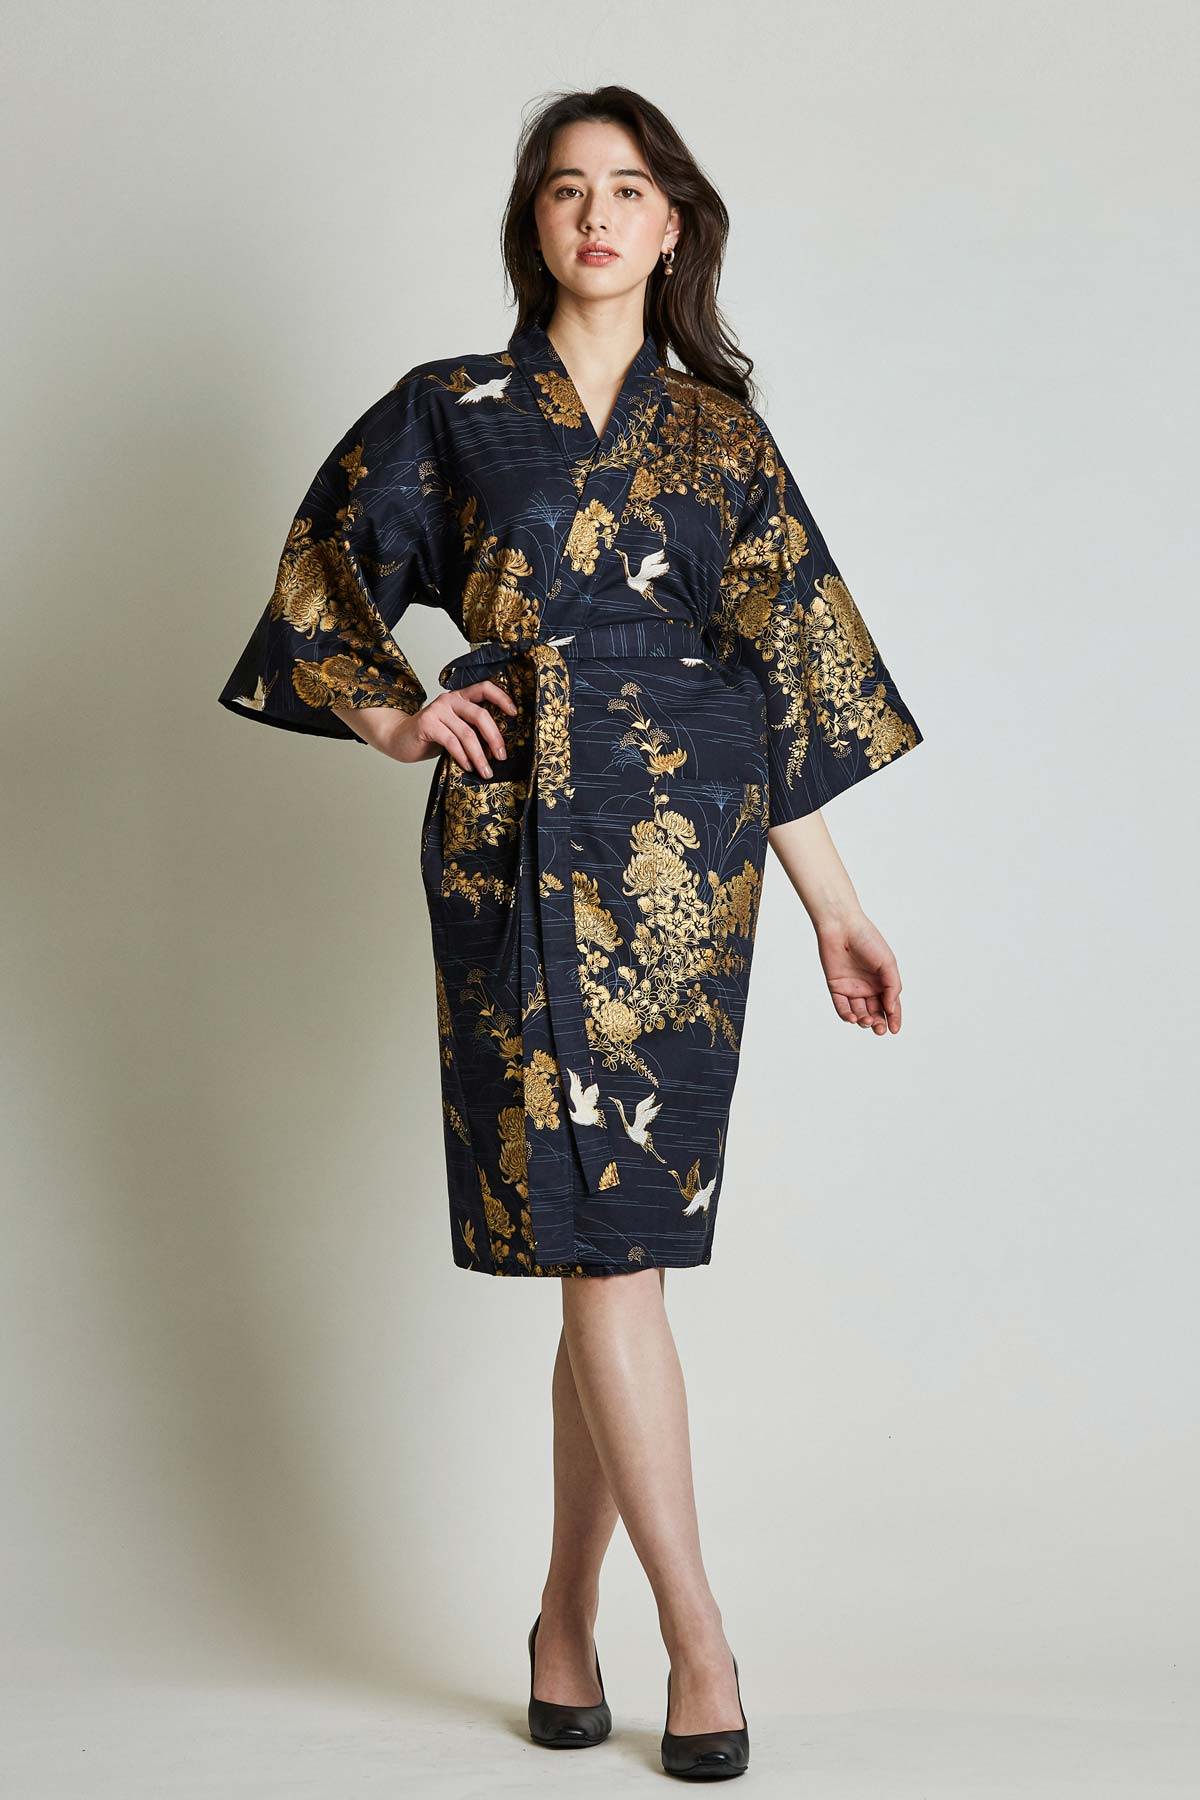 Kimono robe  Cotton robe  Kimono dress  kimono cardigan  Bathrobe Japanese gifts  dressing gown  Japanese dress Japanese clothing